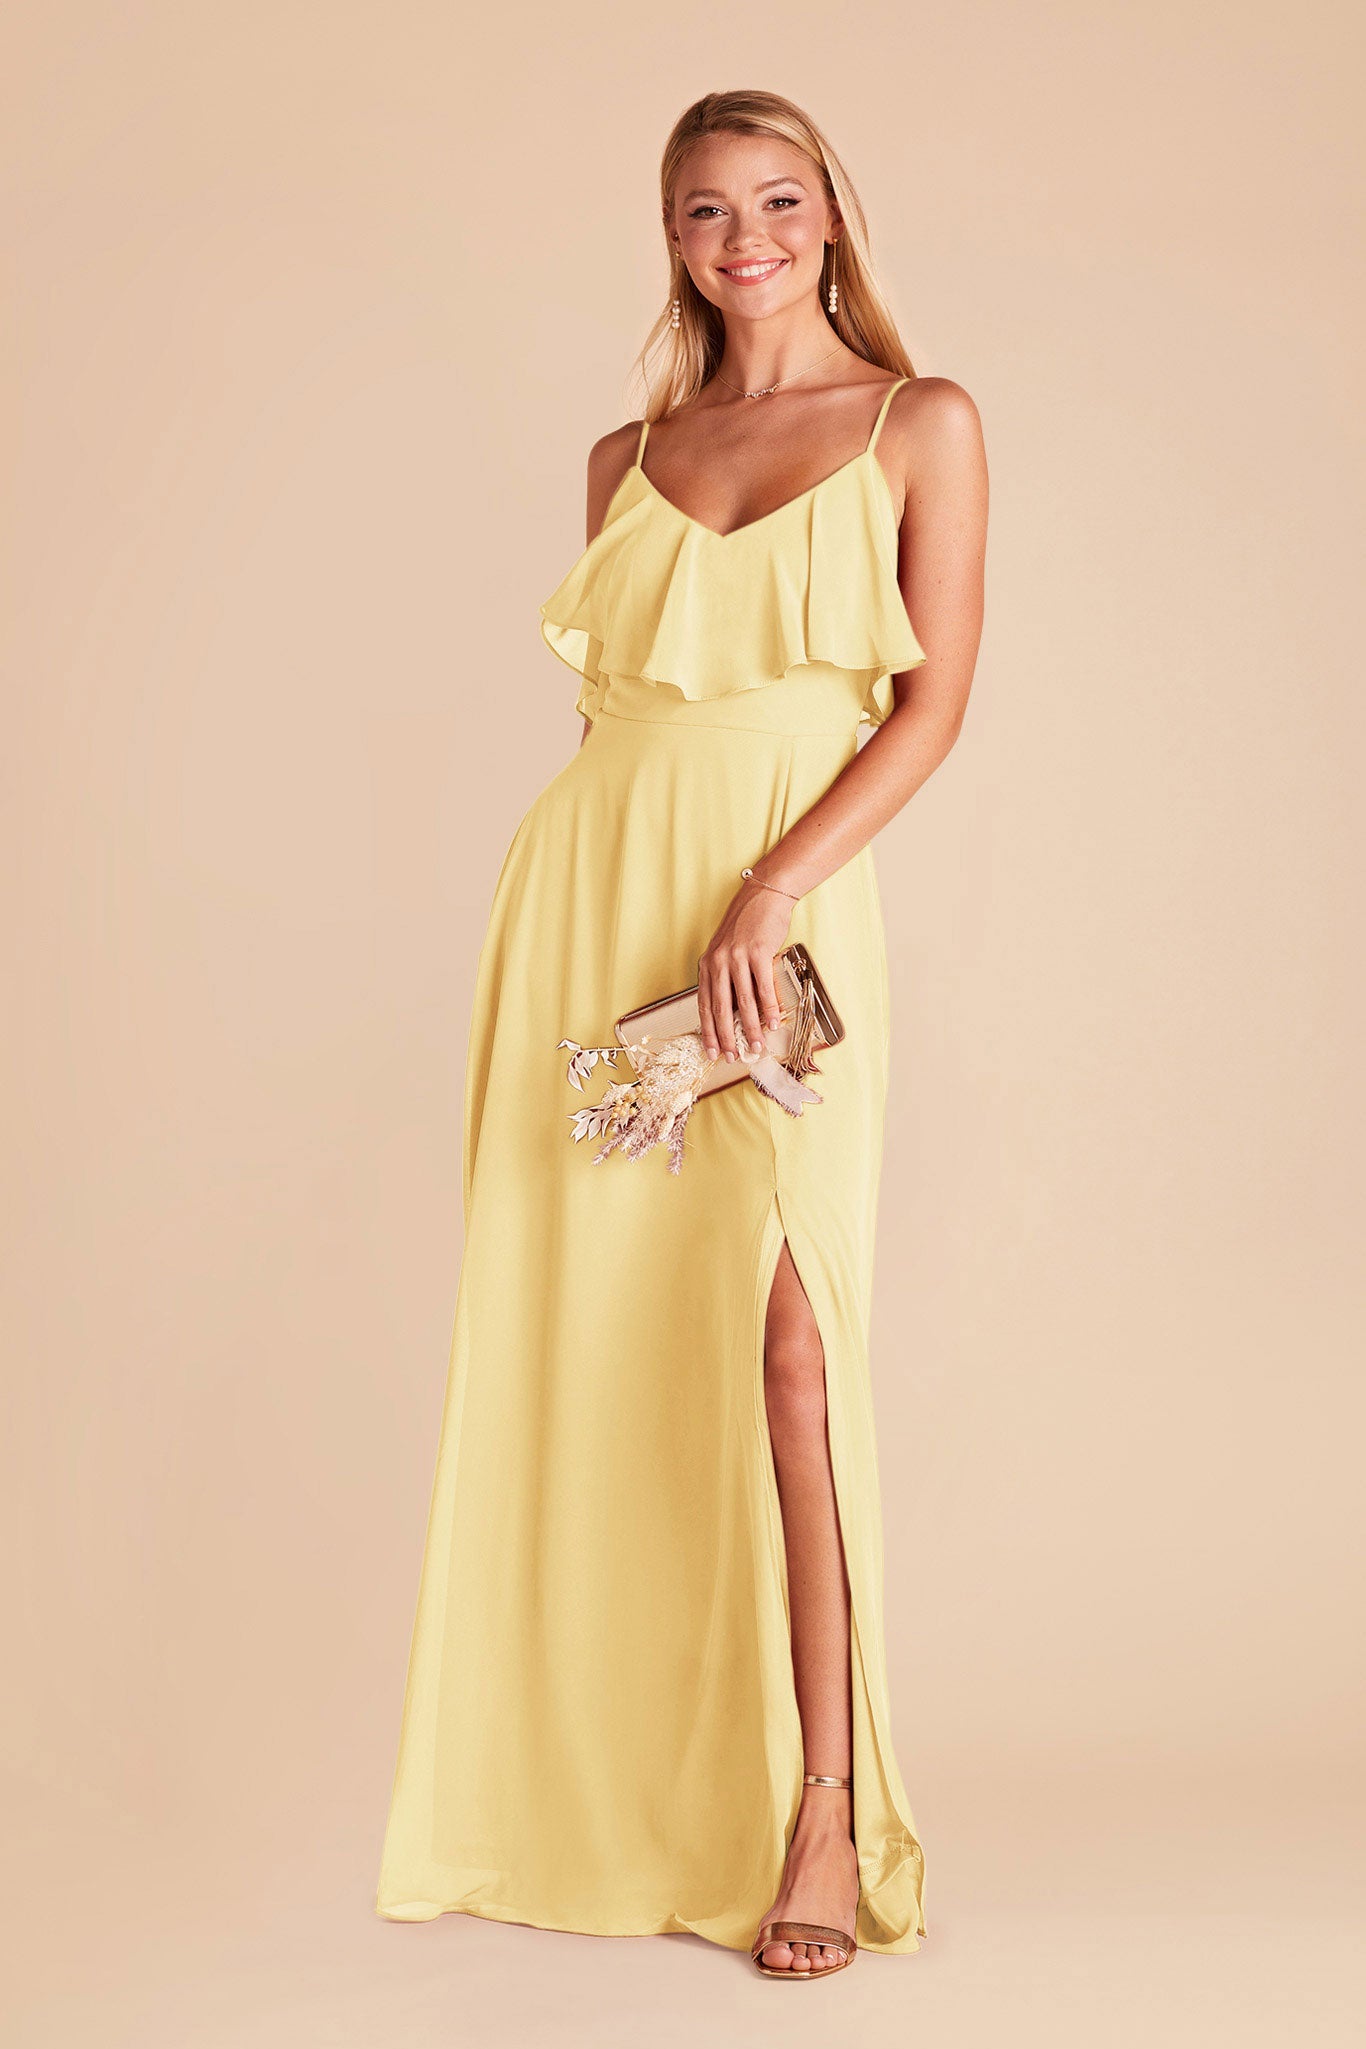 Lemon Sorbet Jane Convertible Dress by Birdy Grey